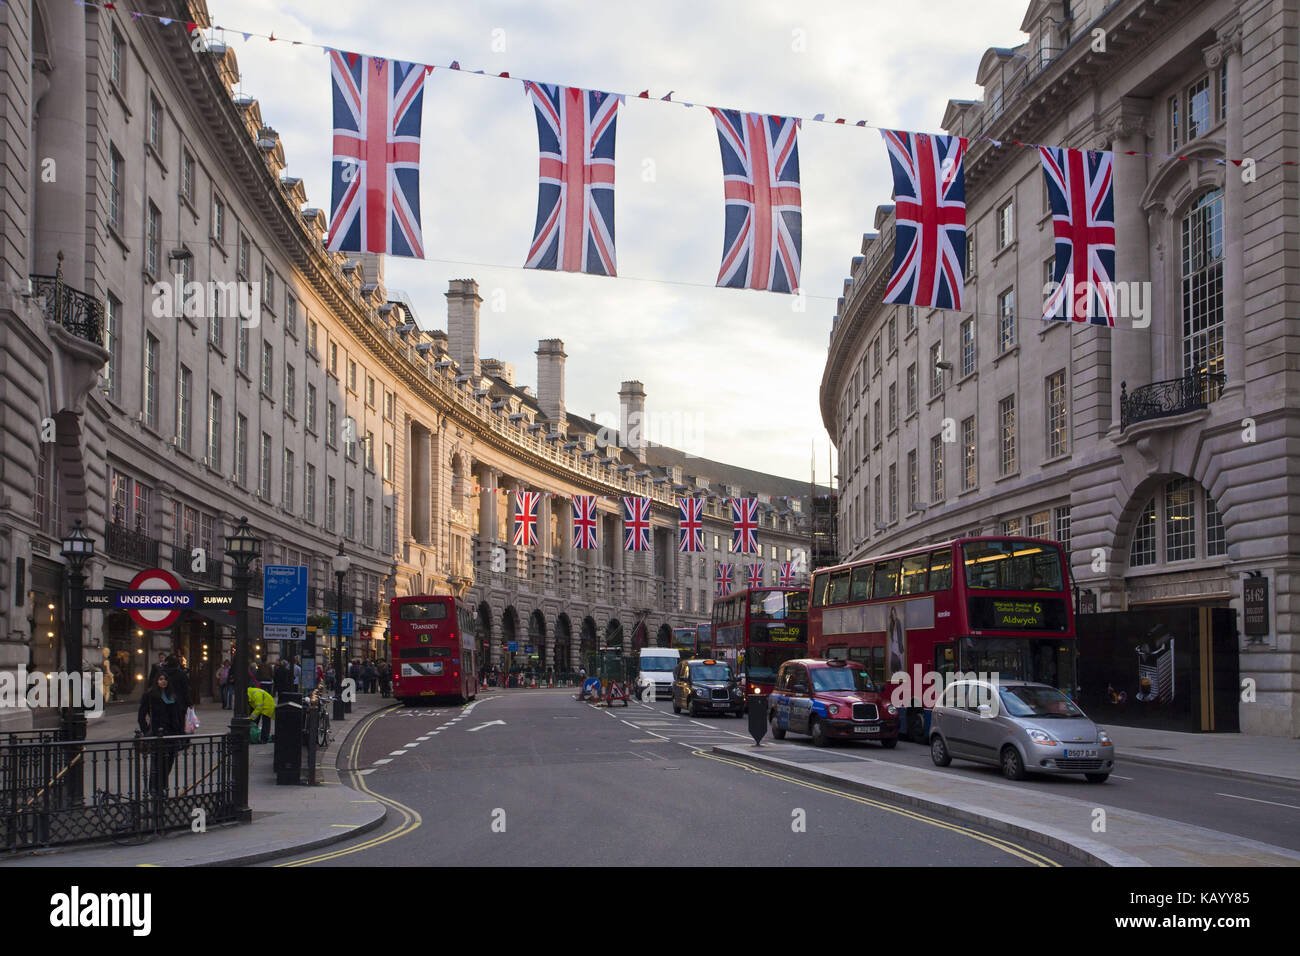 Gran Bretagna, London, Oxford street, decorazione, bandiere, Foto Stock